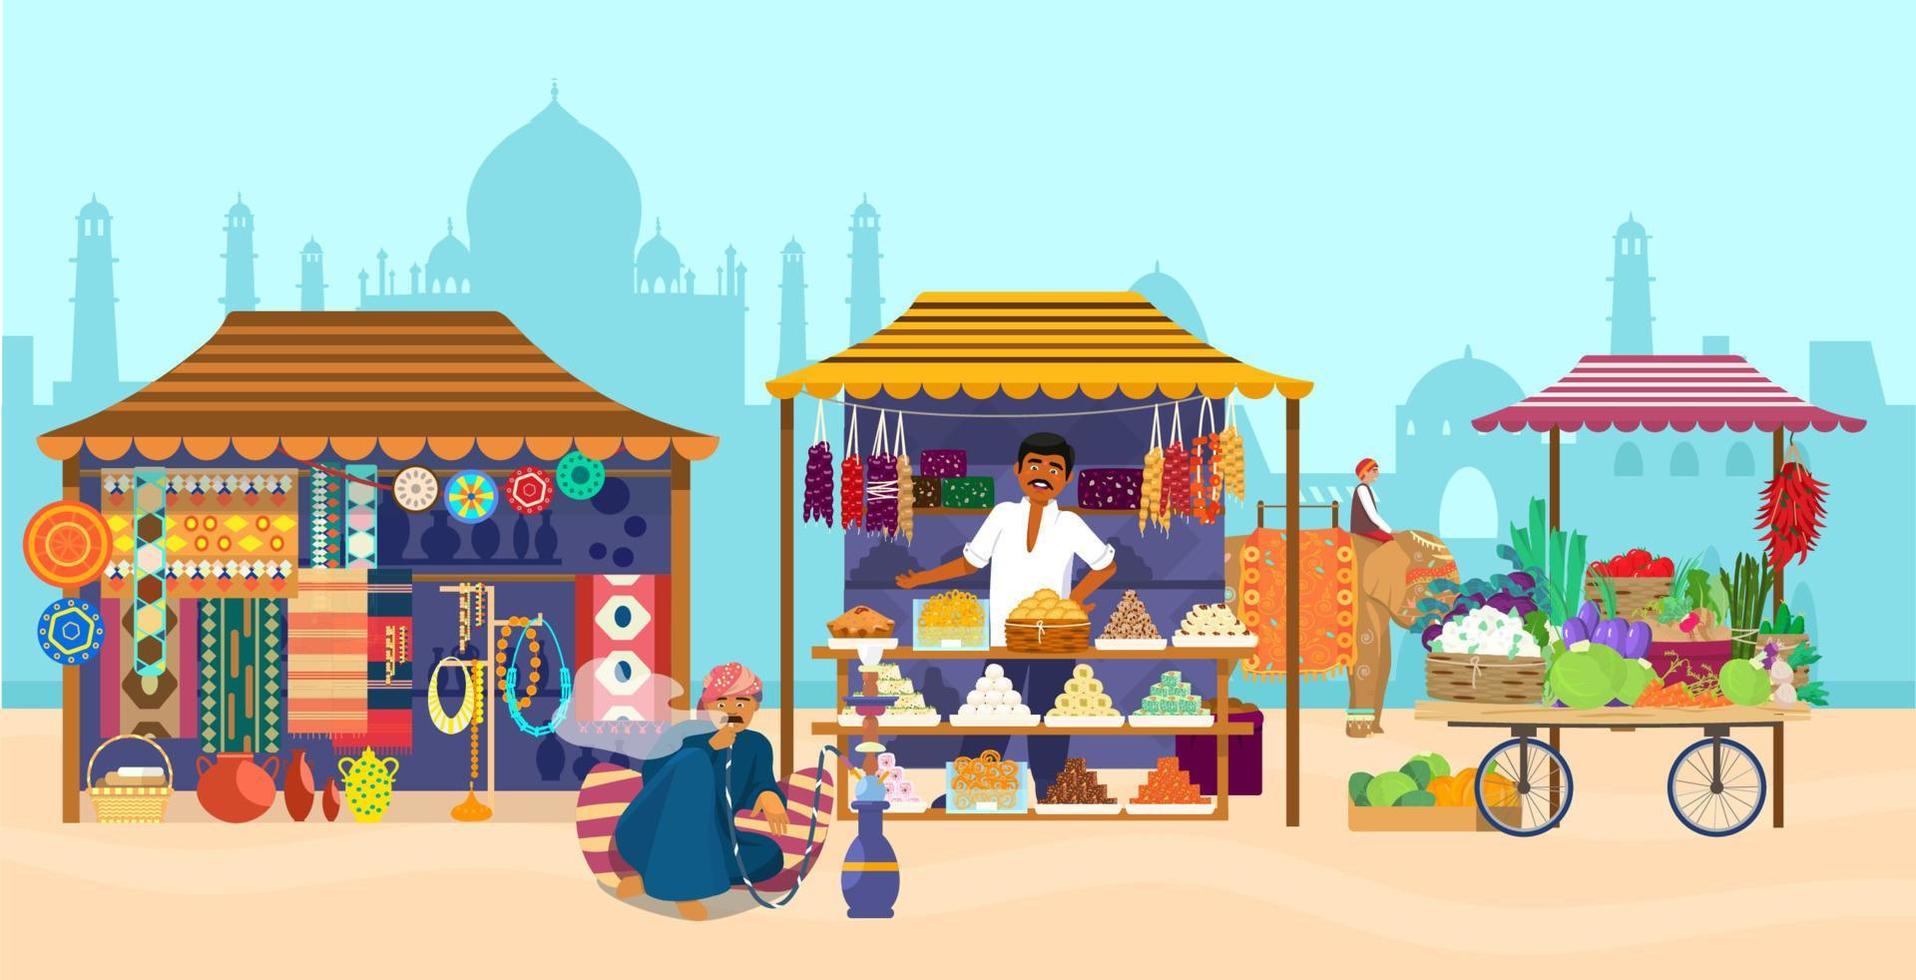 ilustração vetorial do mercado asiático com diferentes lojas e pessoas. cavaleiro de elefante, silhueta de taj mahal, loja de souvenirs, loja de doces, cerâmica, tapetes, tecidos, legumes, cachimbo de água. vetor